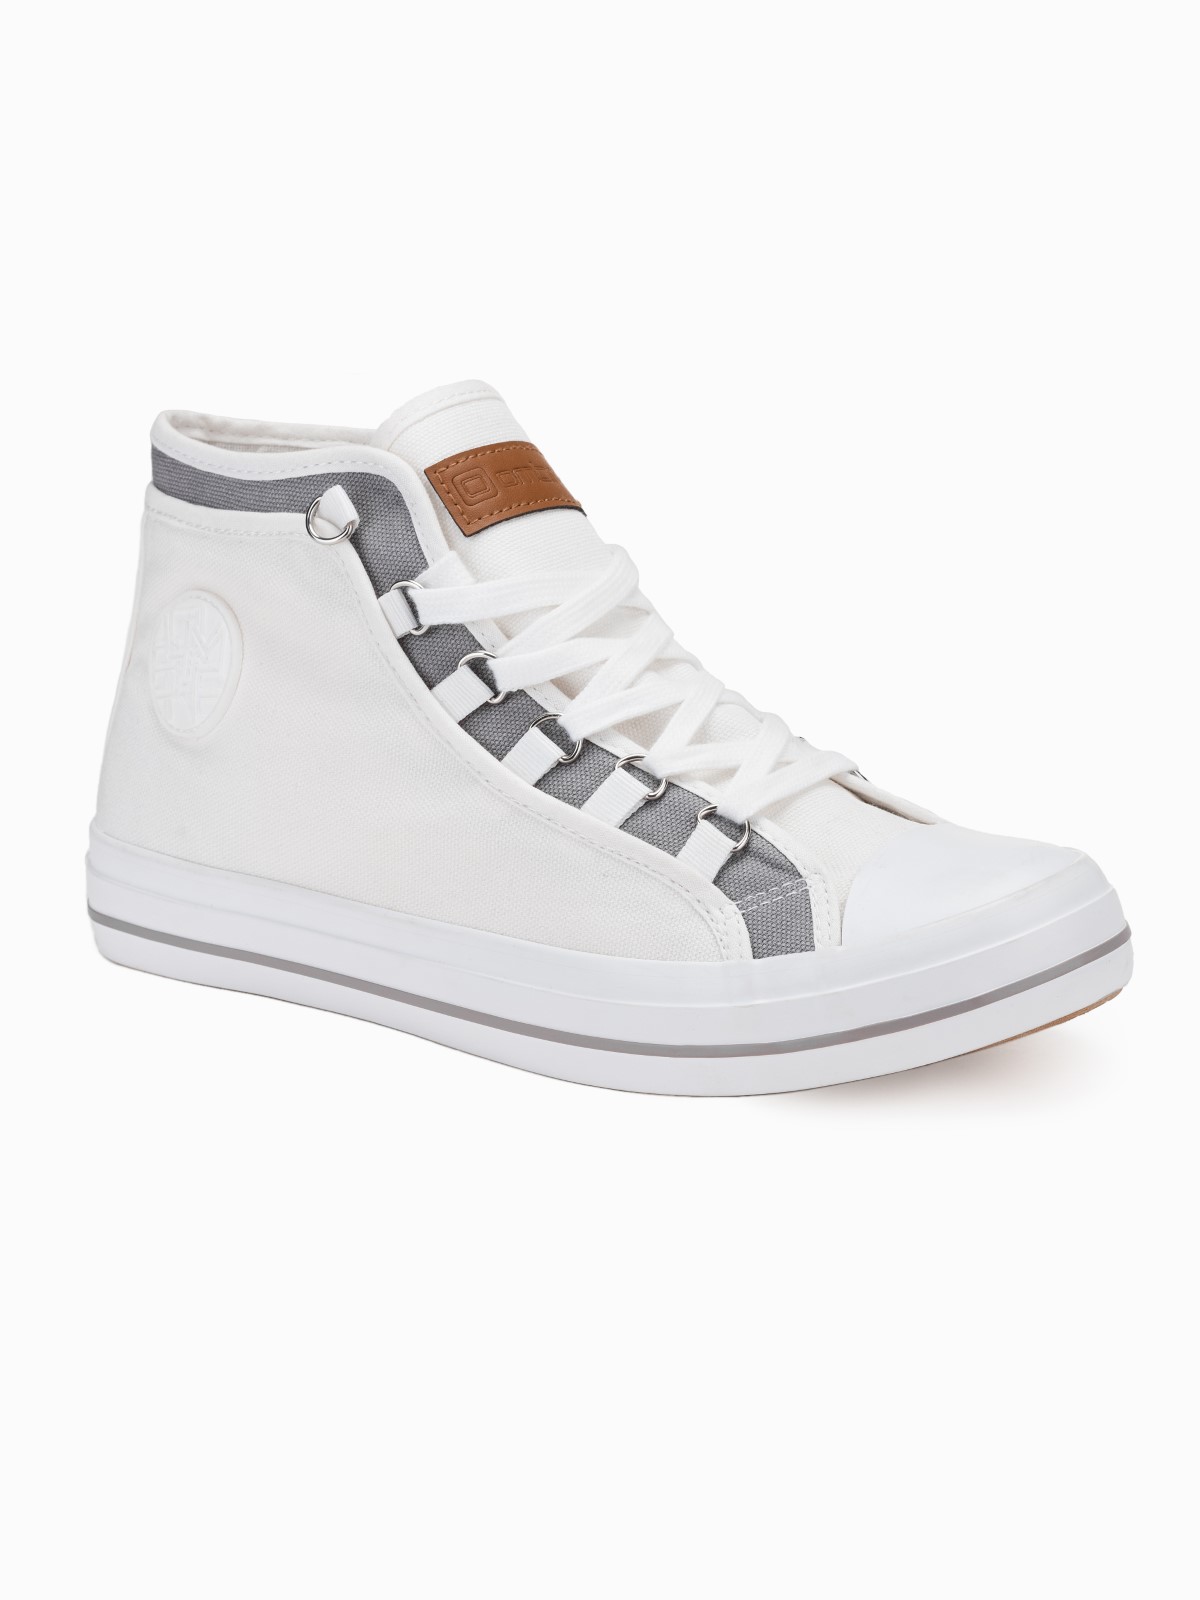 Buty męskie sneakersy T375 - białe - 40 Ombre Clothing